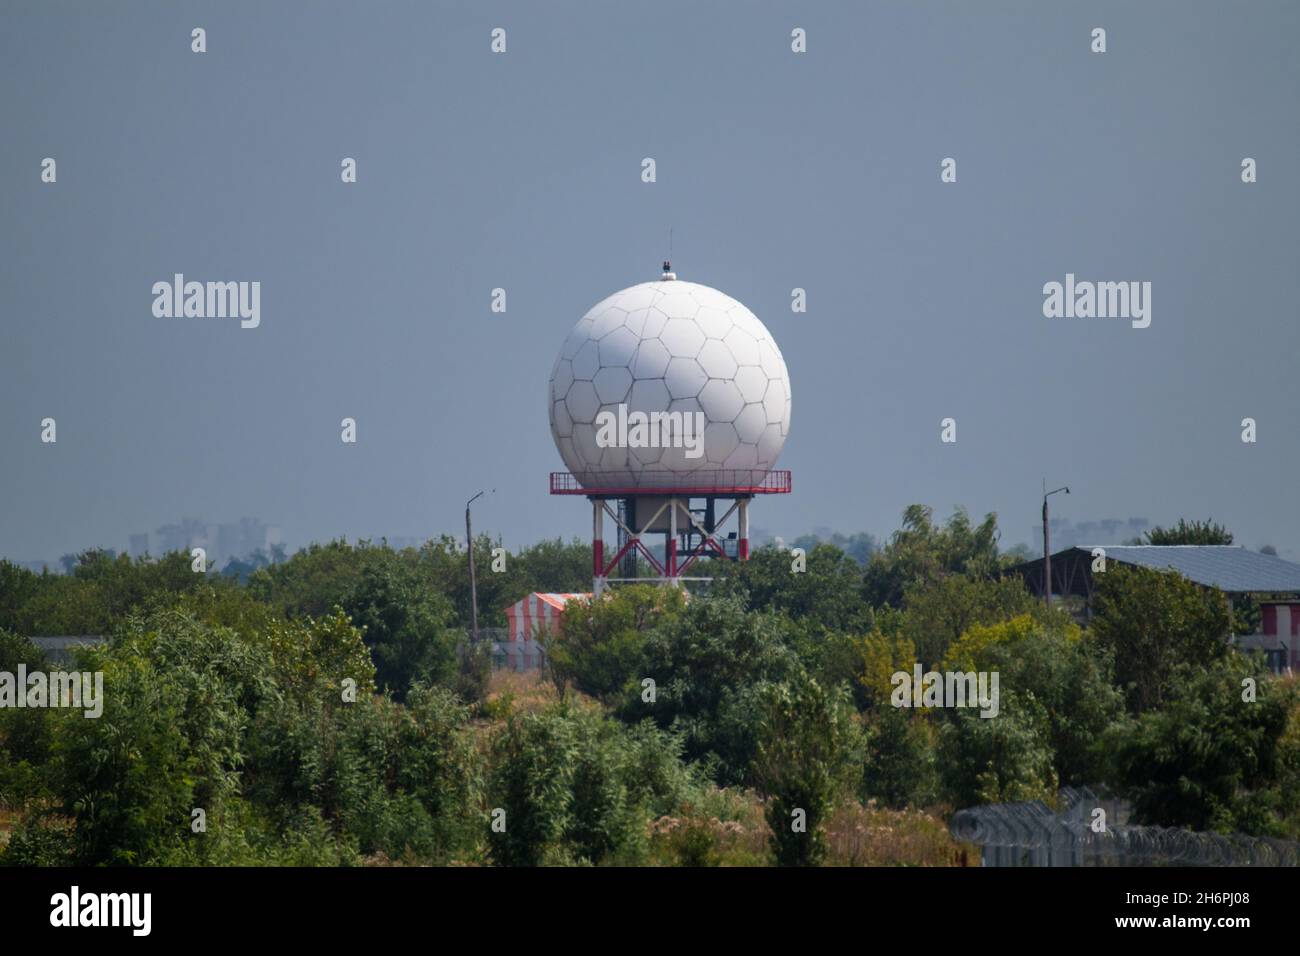 Aeroporto internazionale torre radar a sfera bianca a Kharkiv, Ucraina. Speciale radome a torre a microonde in forme esagonali nel verde nella giornata estiva soleggiata Foto Stock